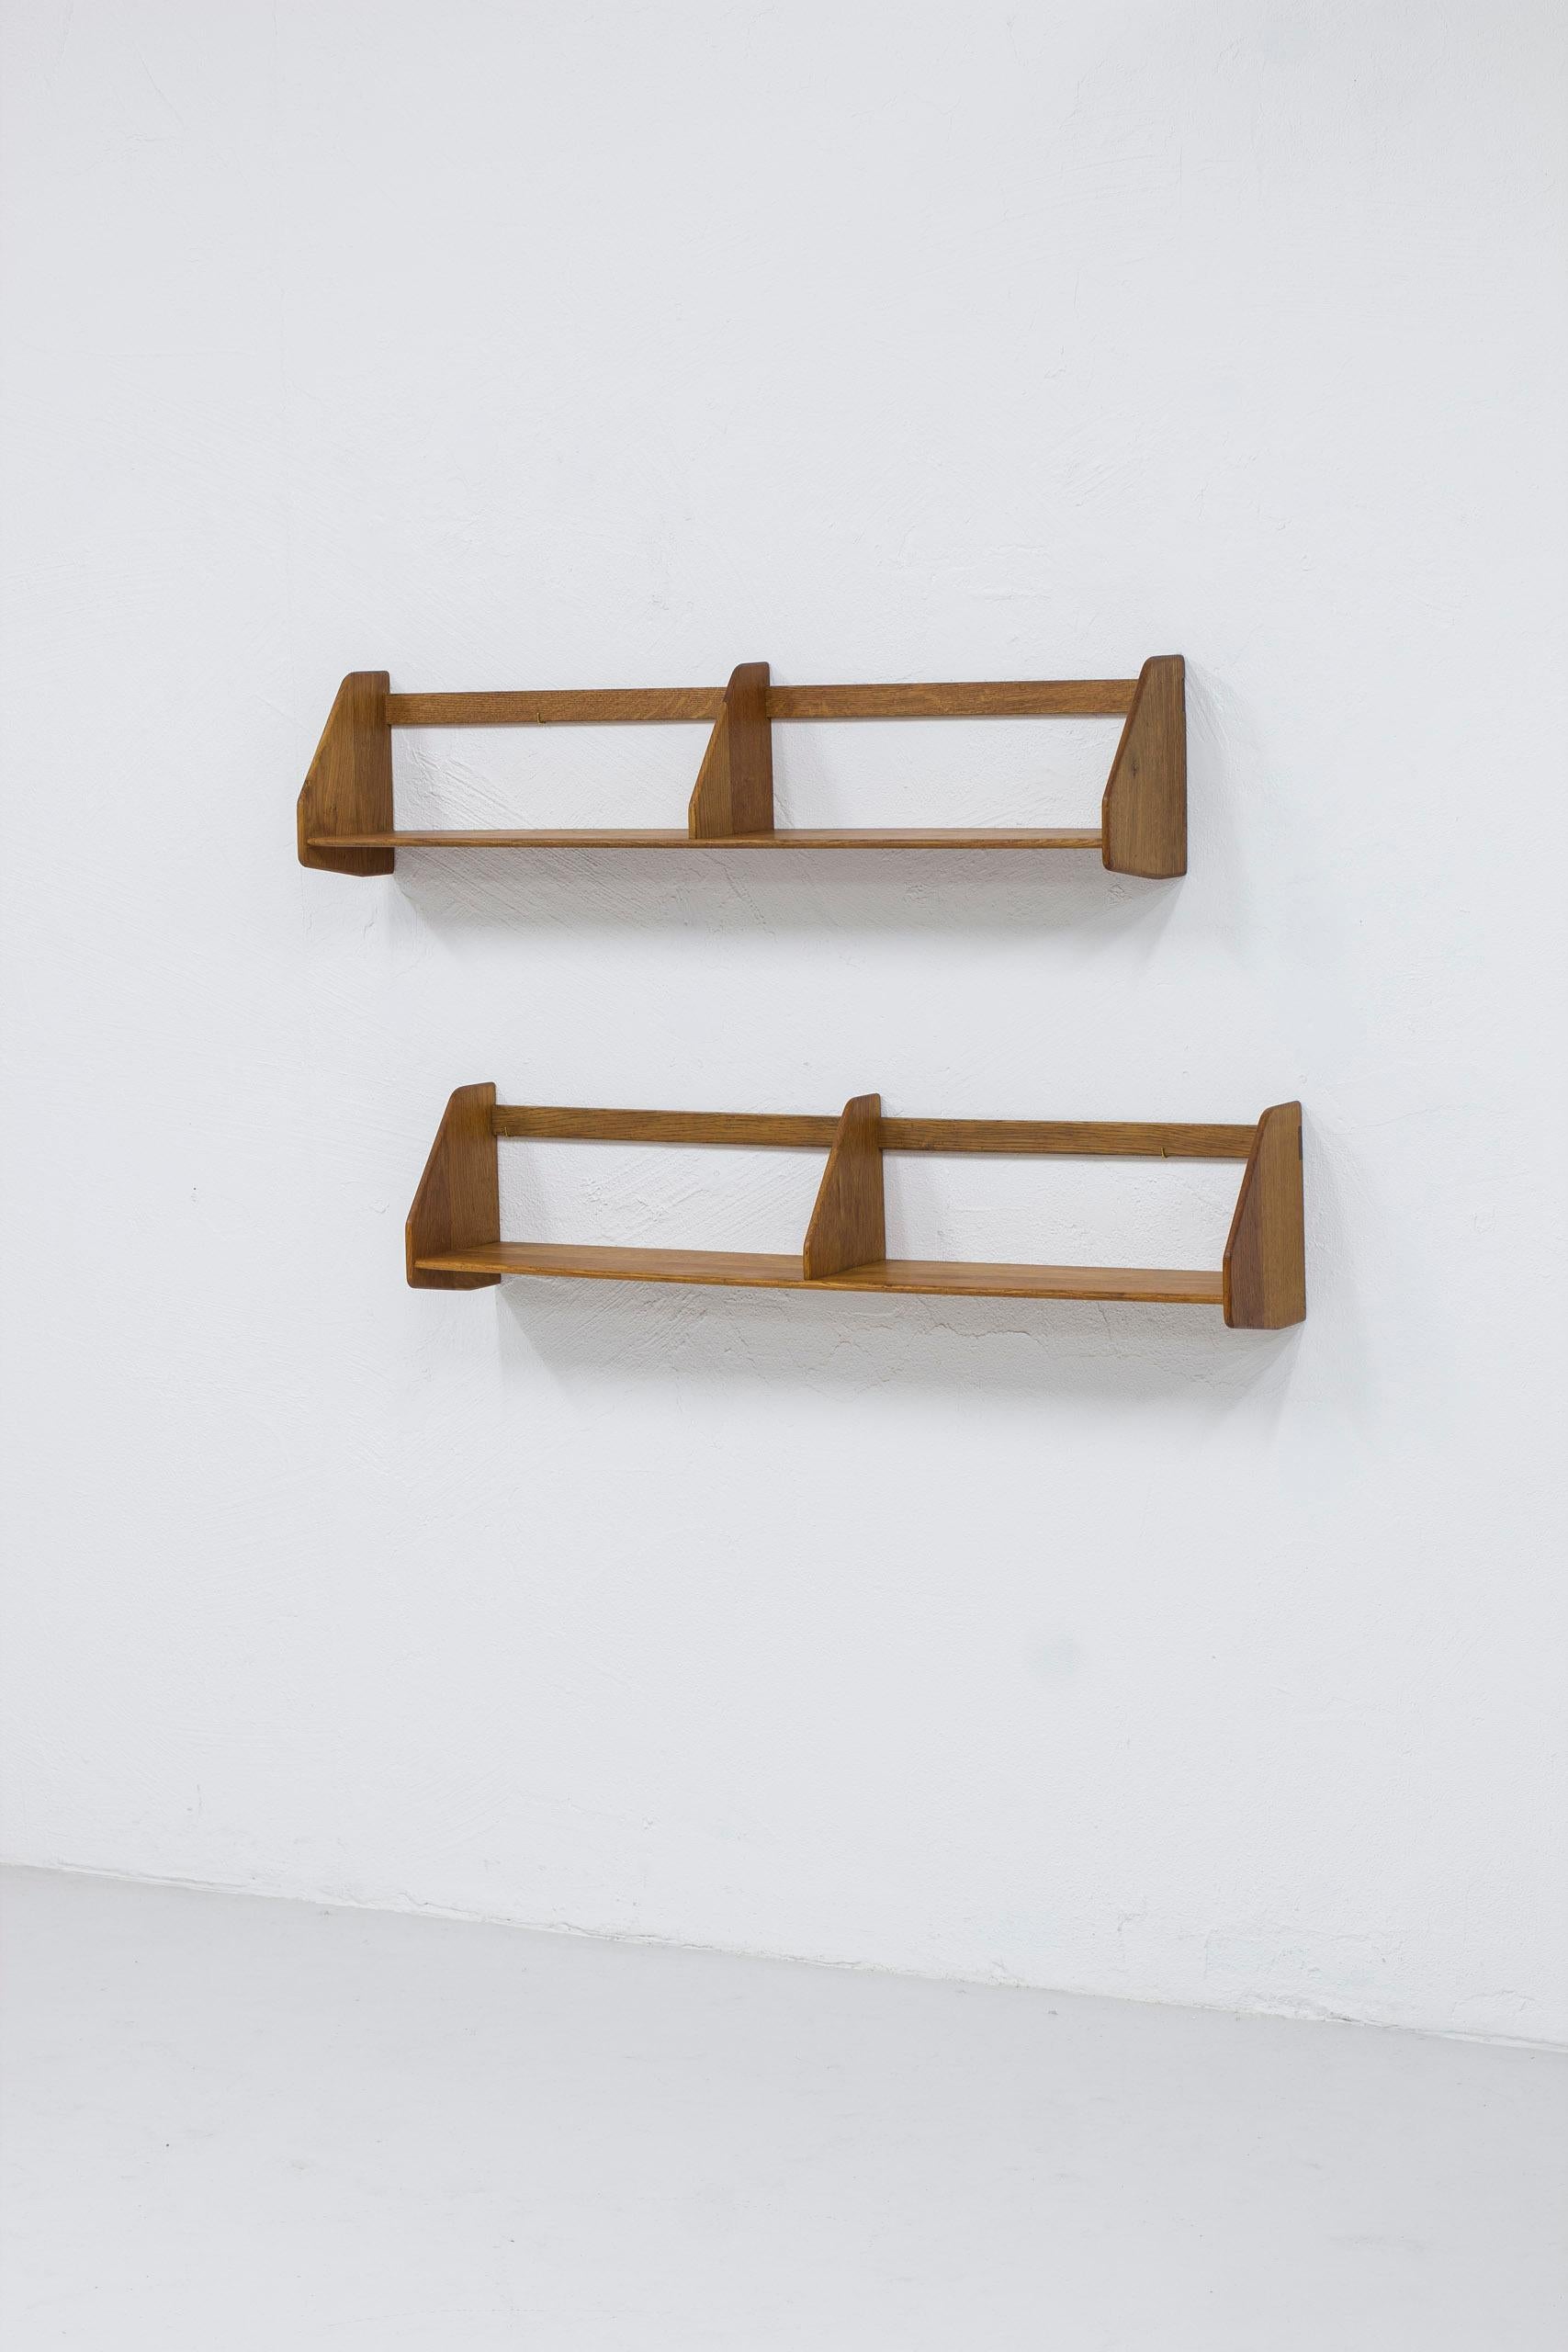 Scandinavian Modern Pair of shelves in oak RY21 by Hans J. Wegner, Denmark, 1950s